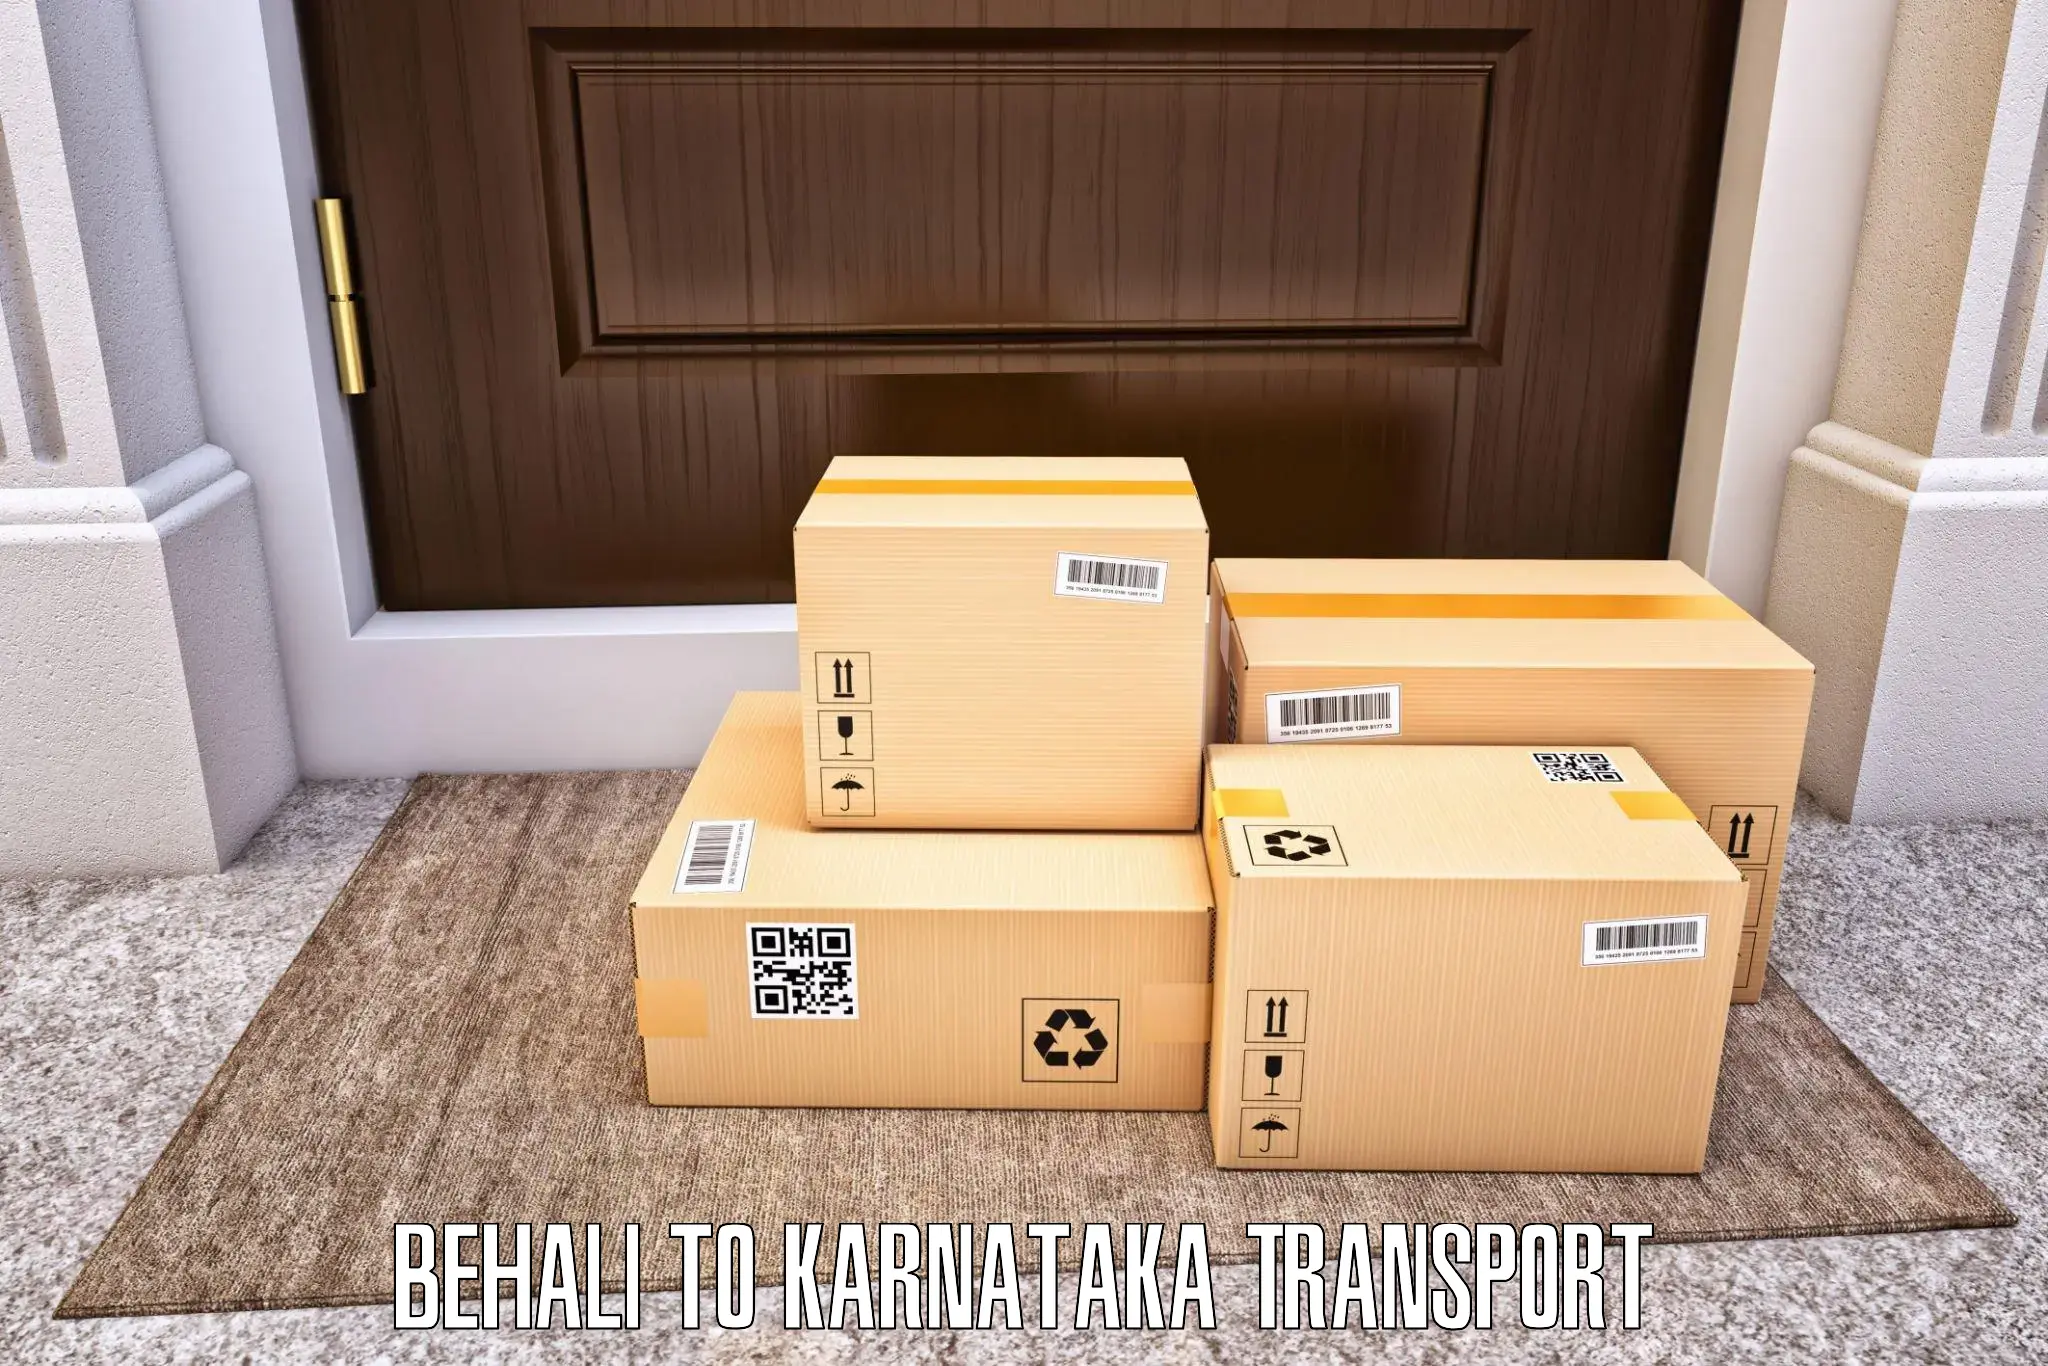 Online transport booking Behali to Srinivaspur